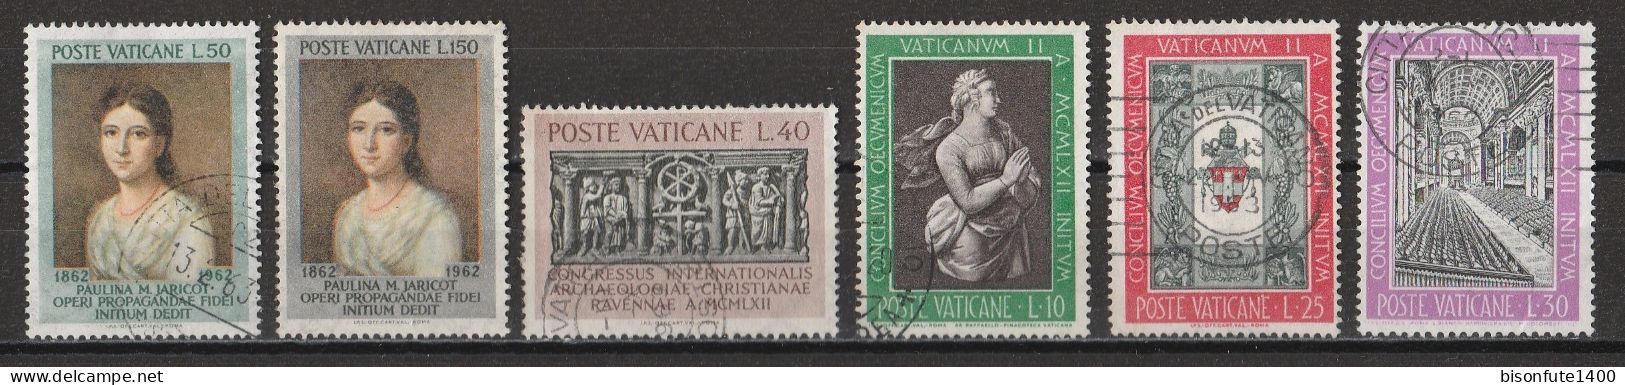 Vatican 1962 : Timbres Yvert & Tellier N° 357 - 358 - 360 - 364 - 366 - 367 - 368 - 369 - 370 - 371 Et 372 Oblitérés. - Gebruikt